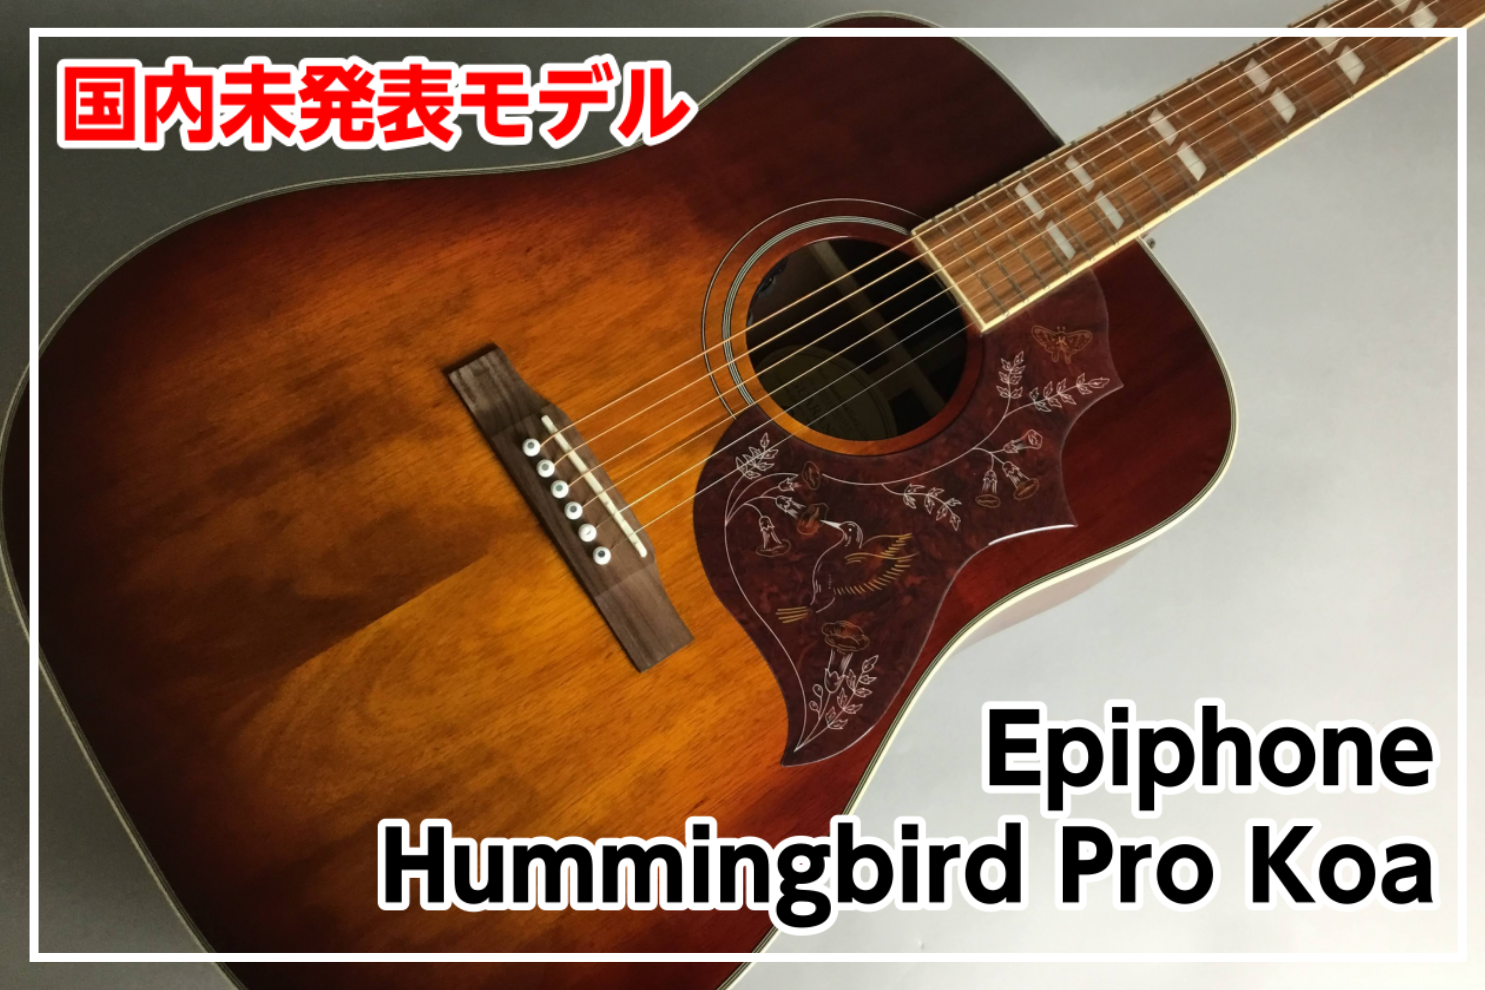 *【日本未発表モデル】Epiphone Hummingbird Pro KOA 入荷！ *MENU [#a:title=商品紹介] [#b:title=価格] [#c:title=問合せ] [#d:title=小倉店からのお知らせ] ===a=== *商品紹介 日本未発表モデルが入荷！ Epipho […]